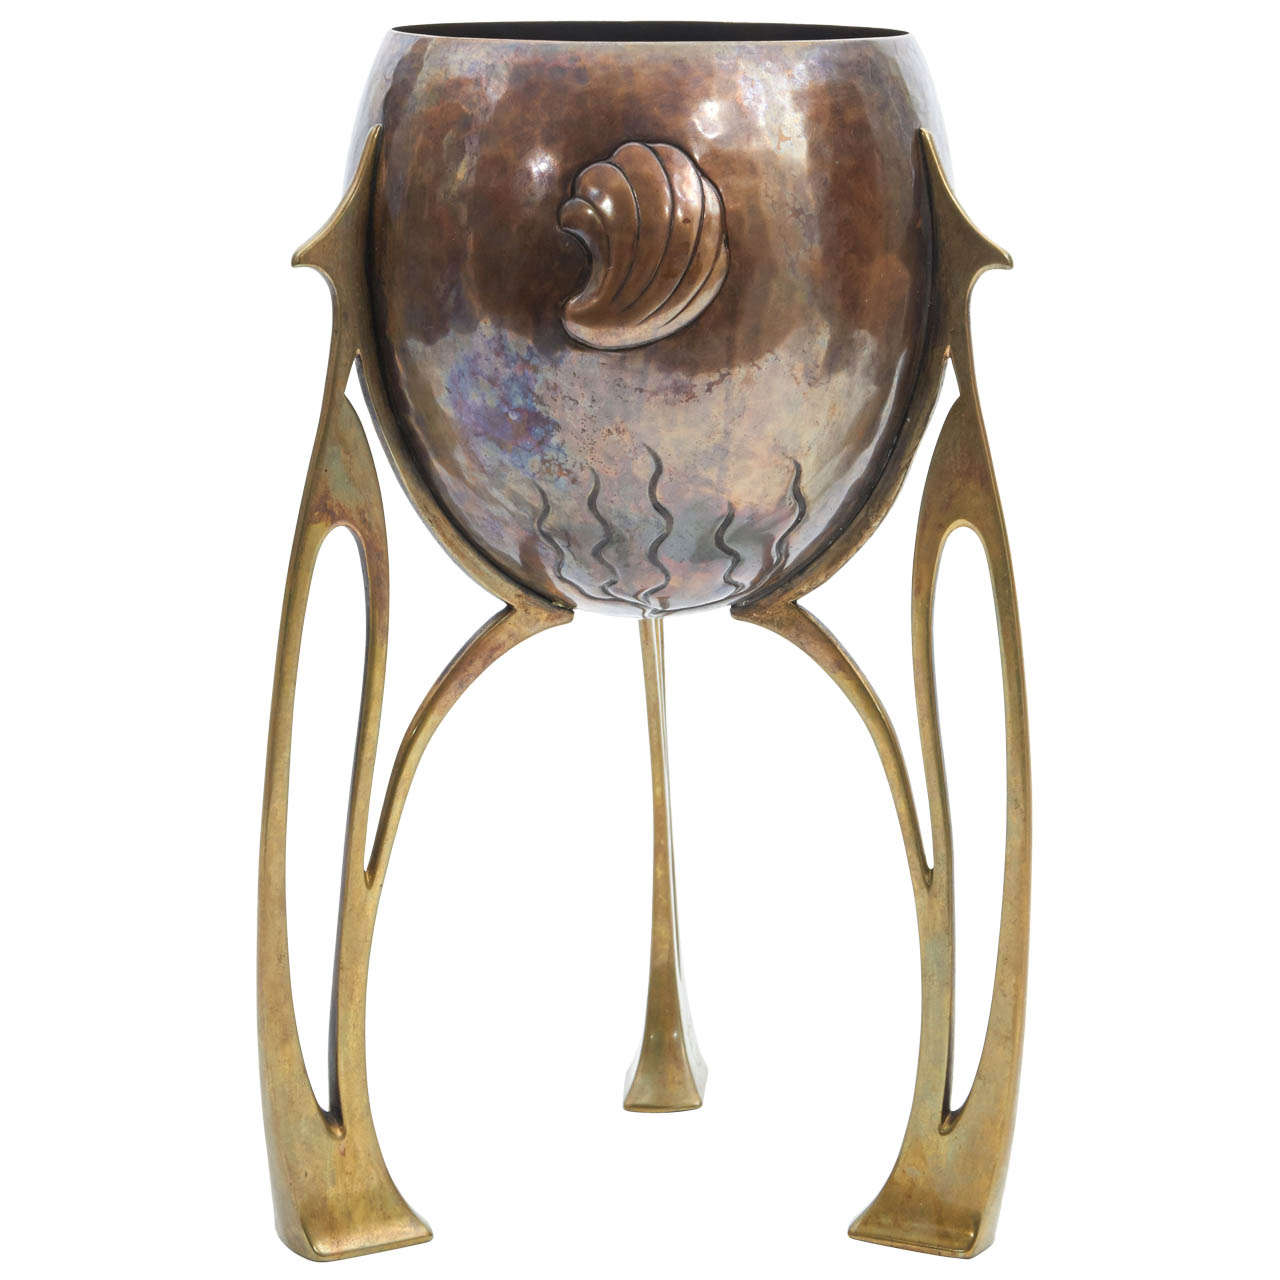 Art Nouveau WMF  / Jugendstil Copper & Brass Planter / vase c. 1900